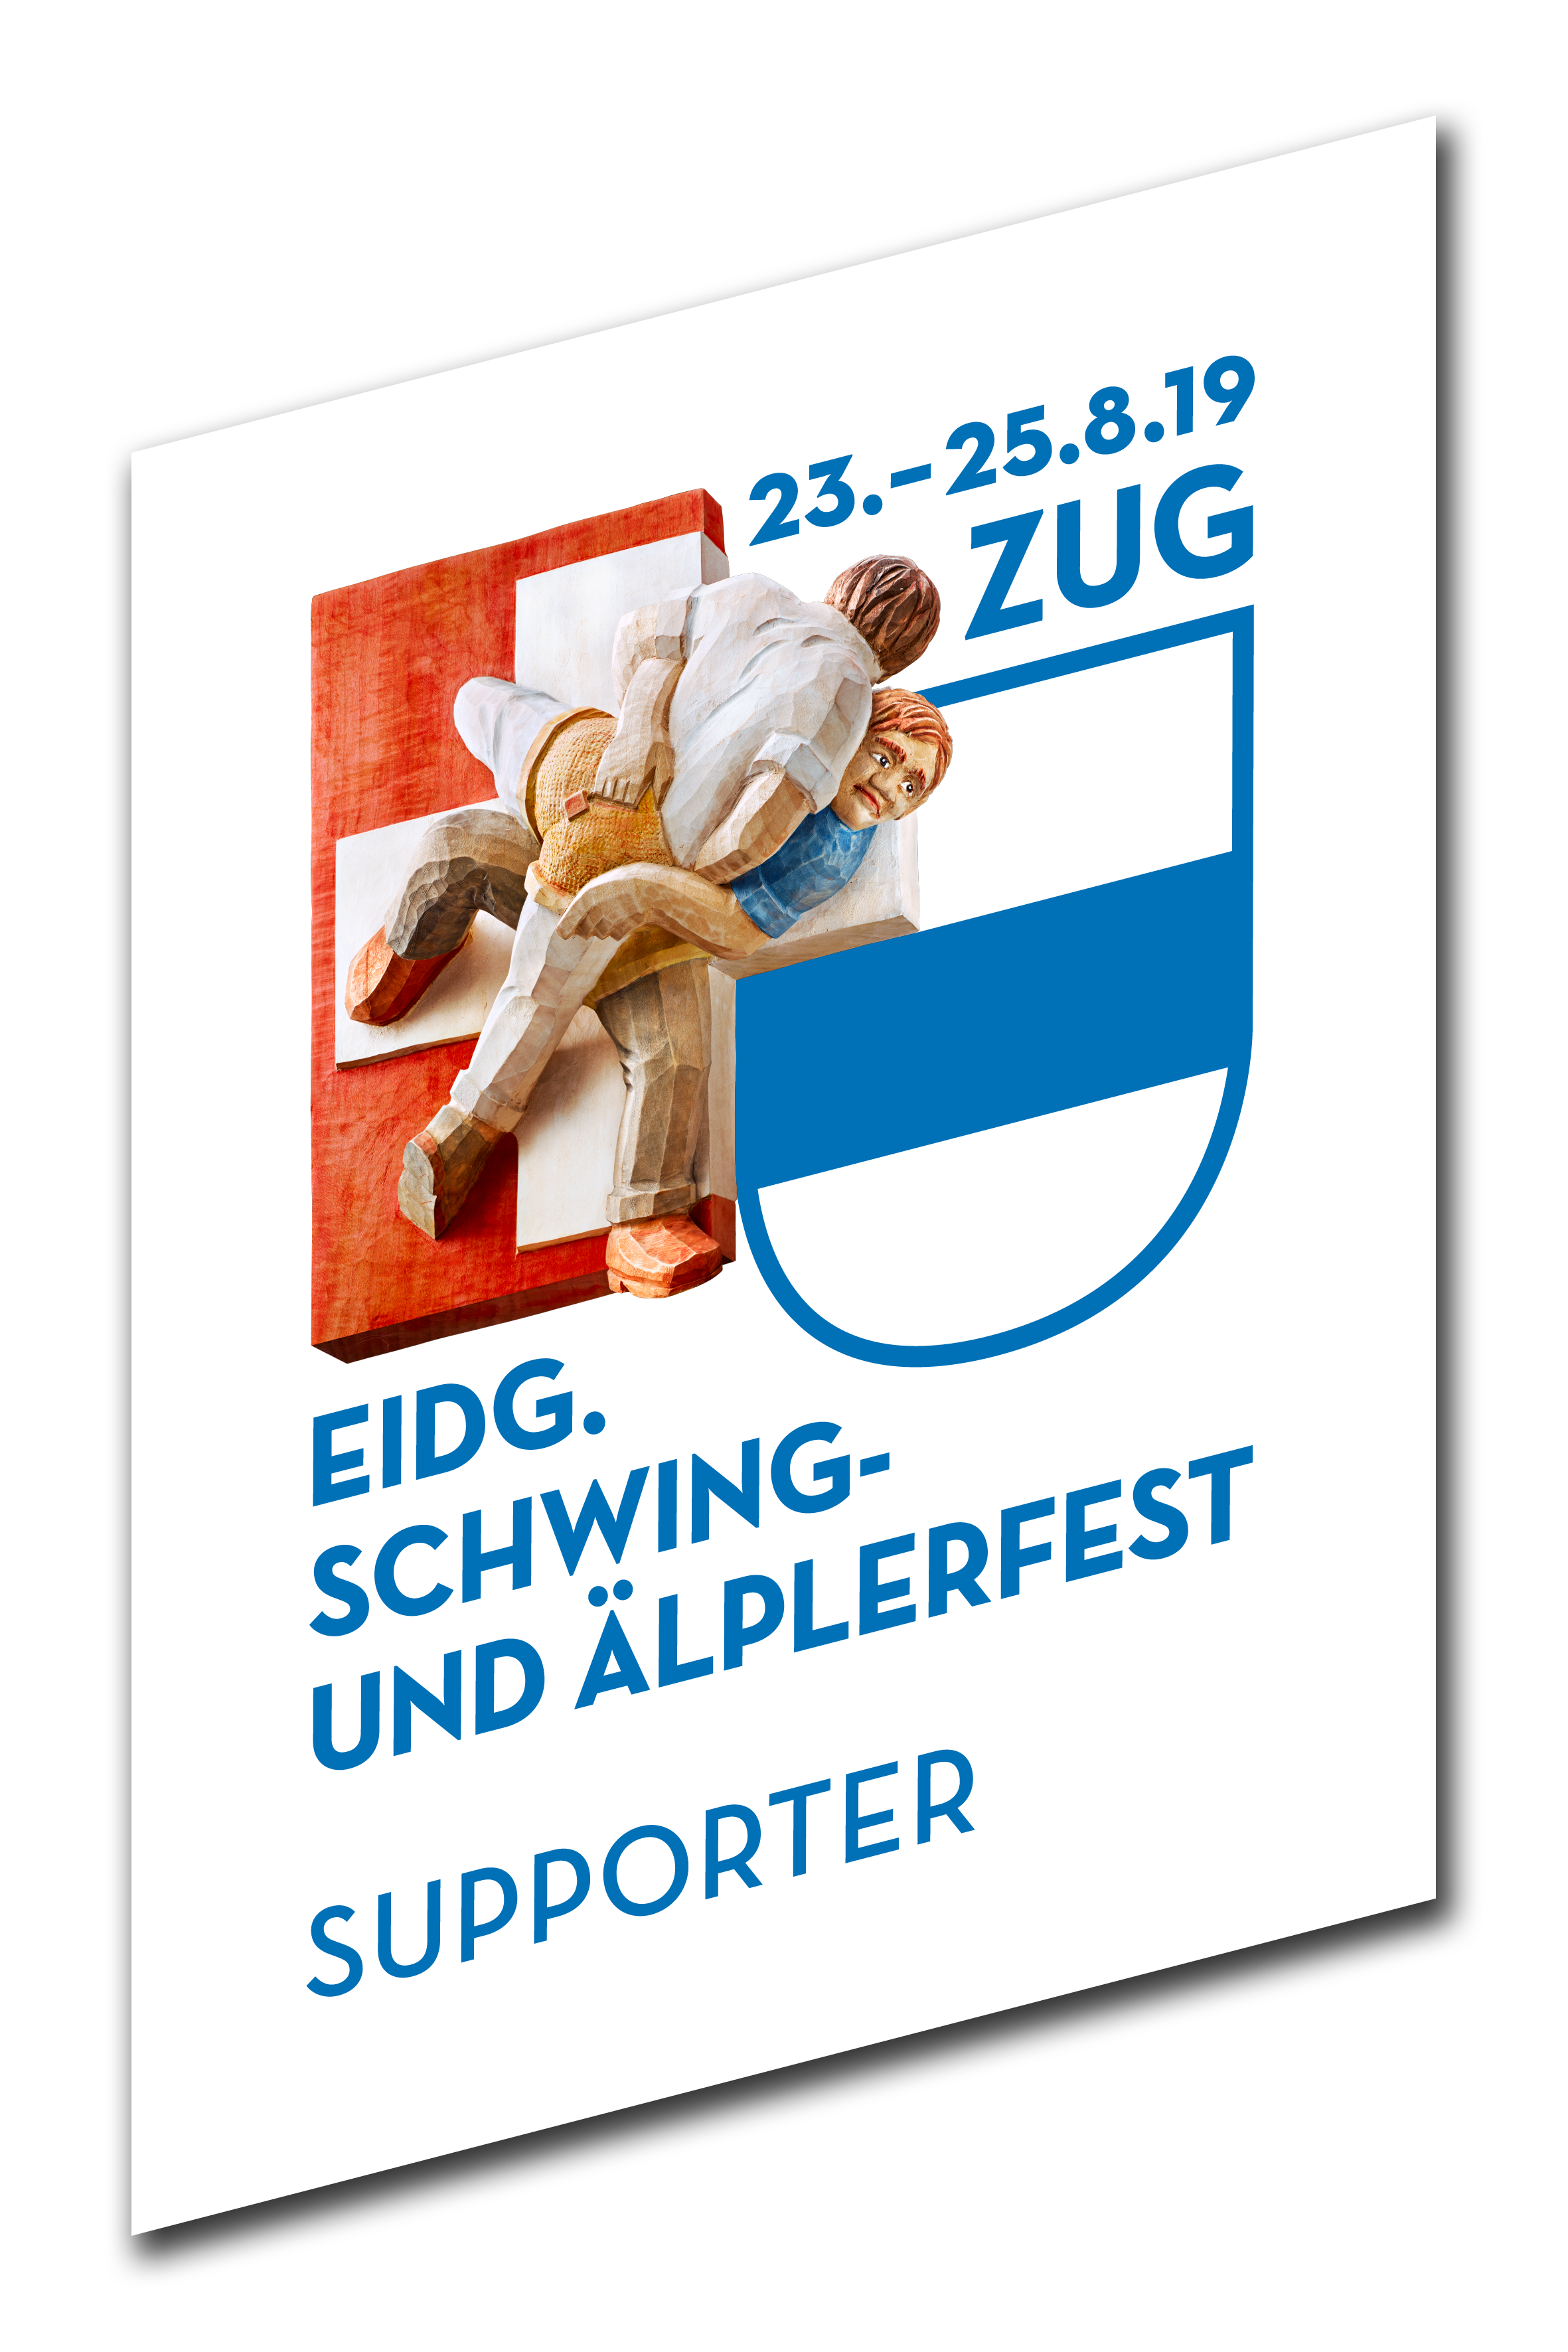 Eidg. Schwing- und Älplerfest 2019 in Zug